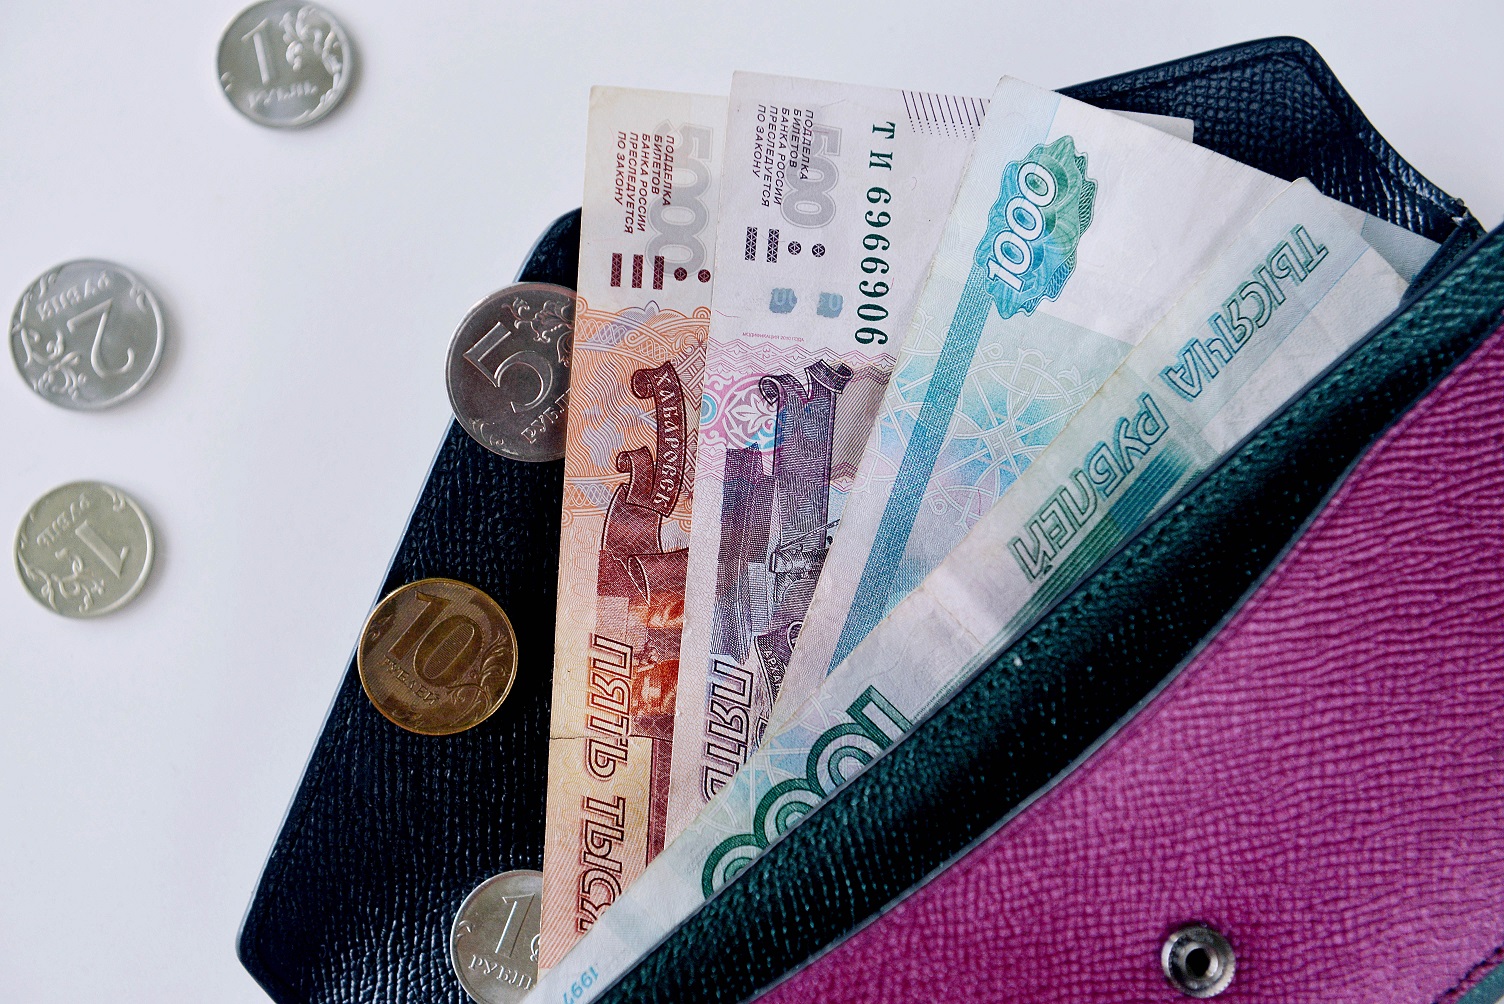 Жулики убедили пенсионерку из Костромы выслать им деньги наличными в конверте